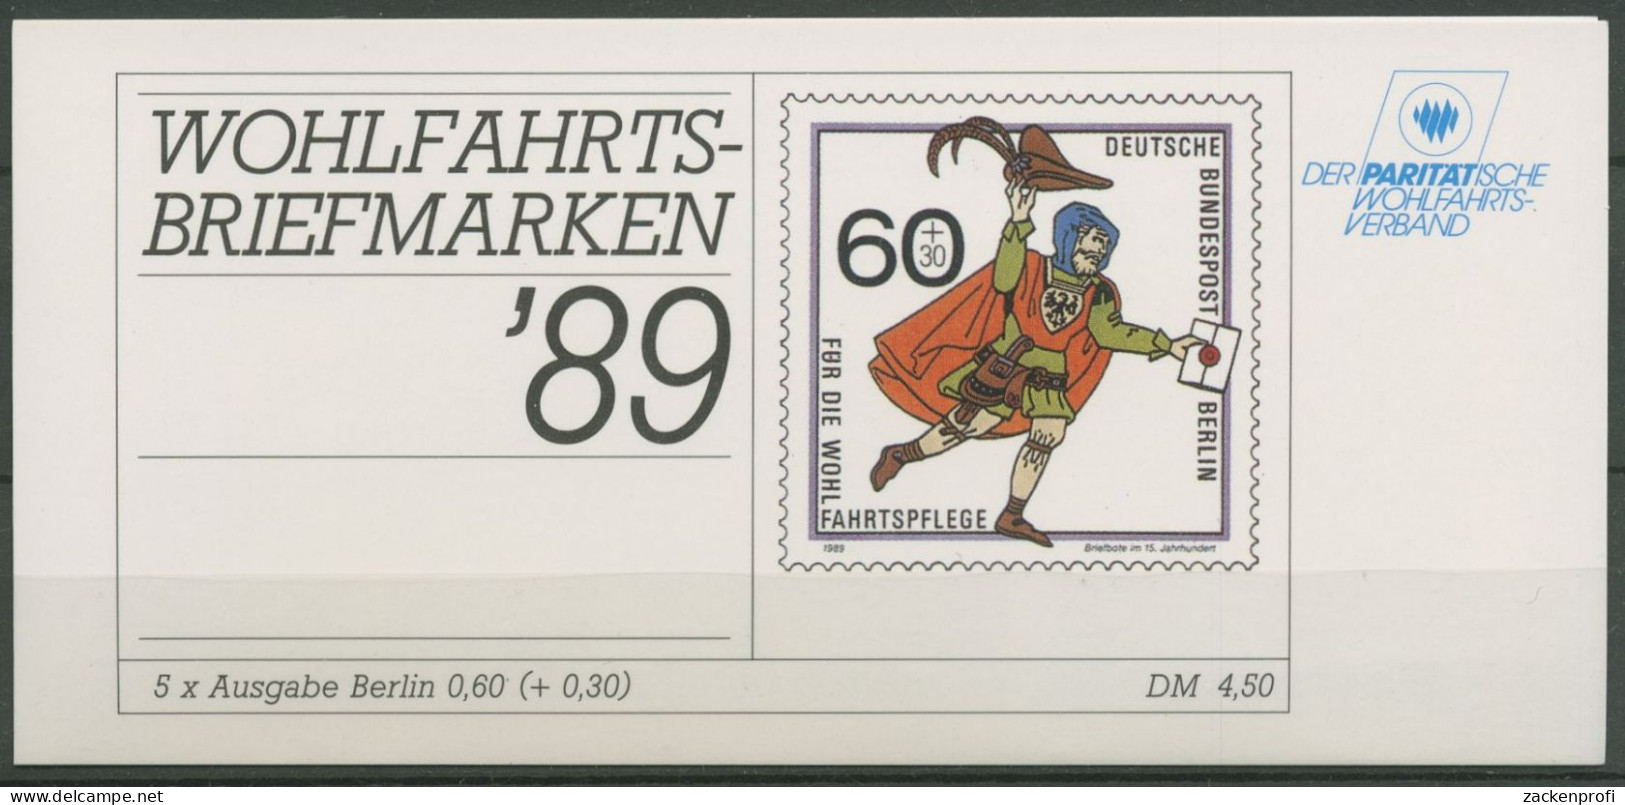 Berlin Der Paritätische DPW 1989 Markenheftchen (852) MH 5 Postfrisch (C60298) - Markenheftchen